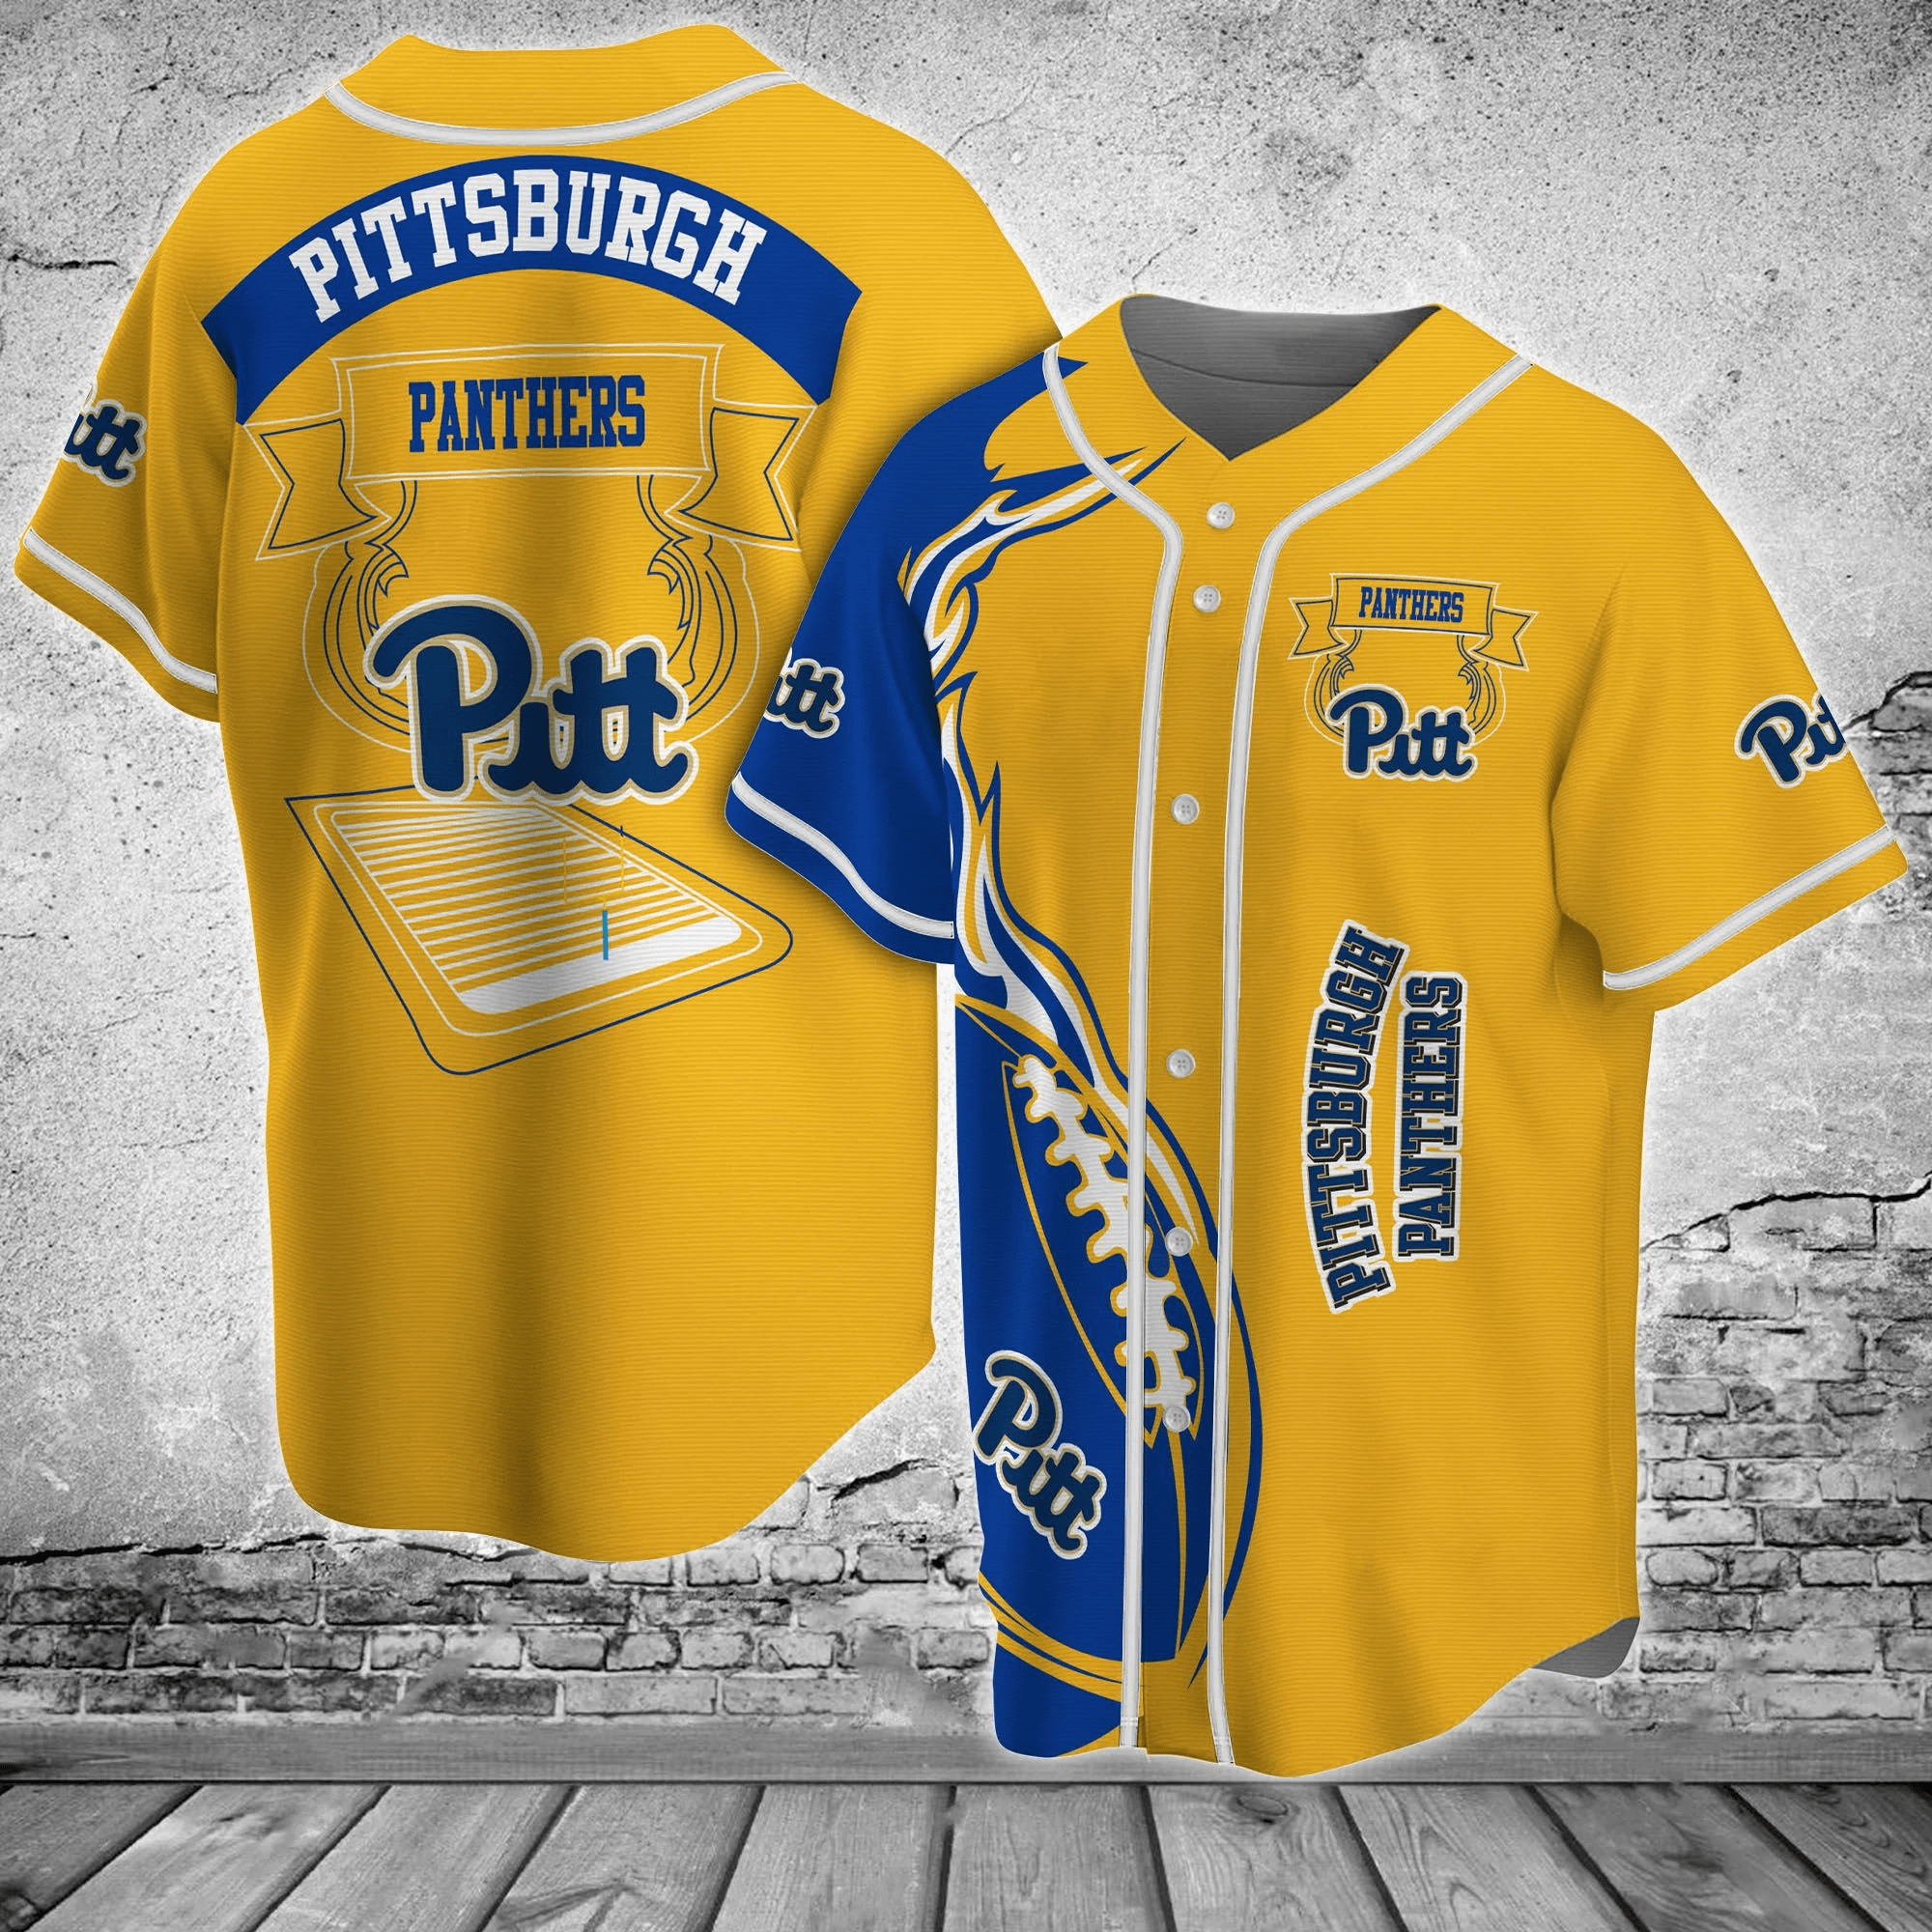  Pittsburgh Panthers NCAA Baseball Jersey Shirt Classic